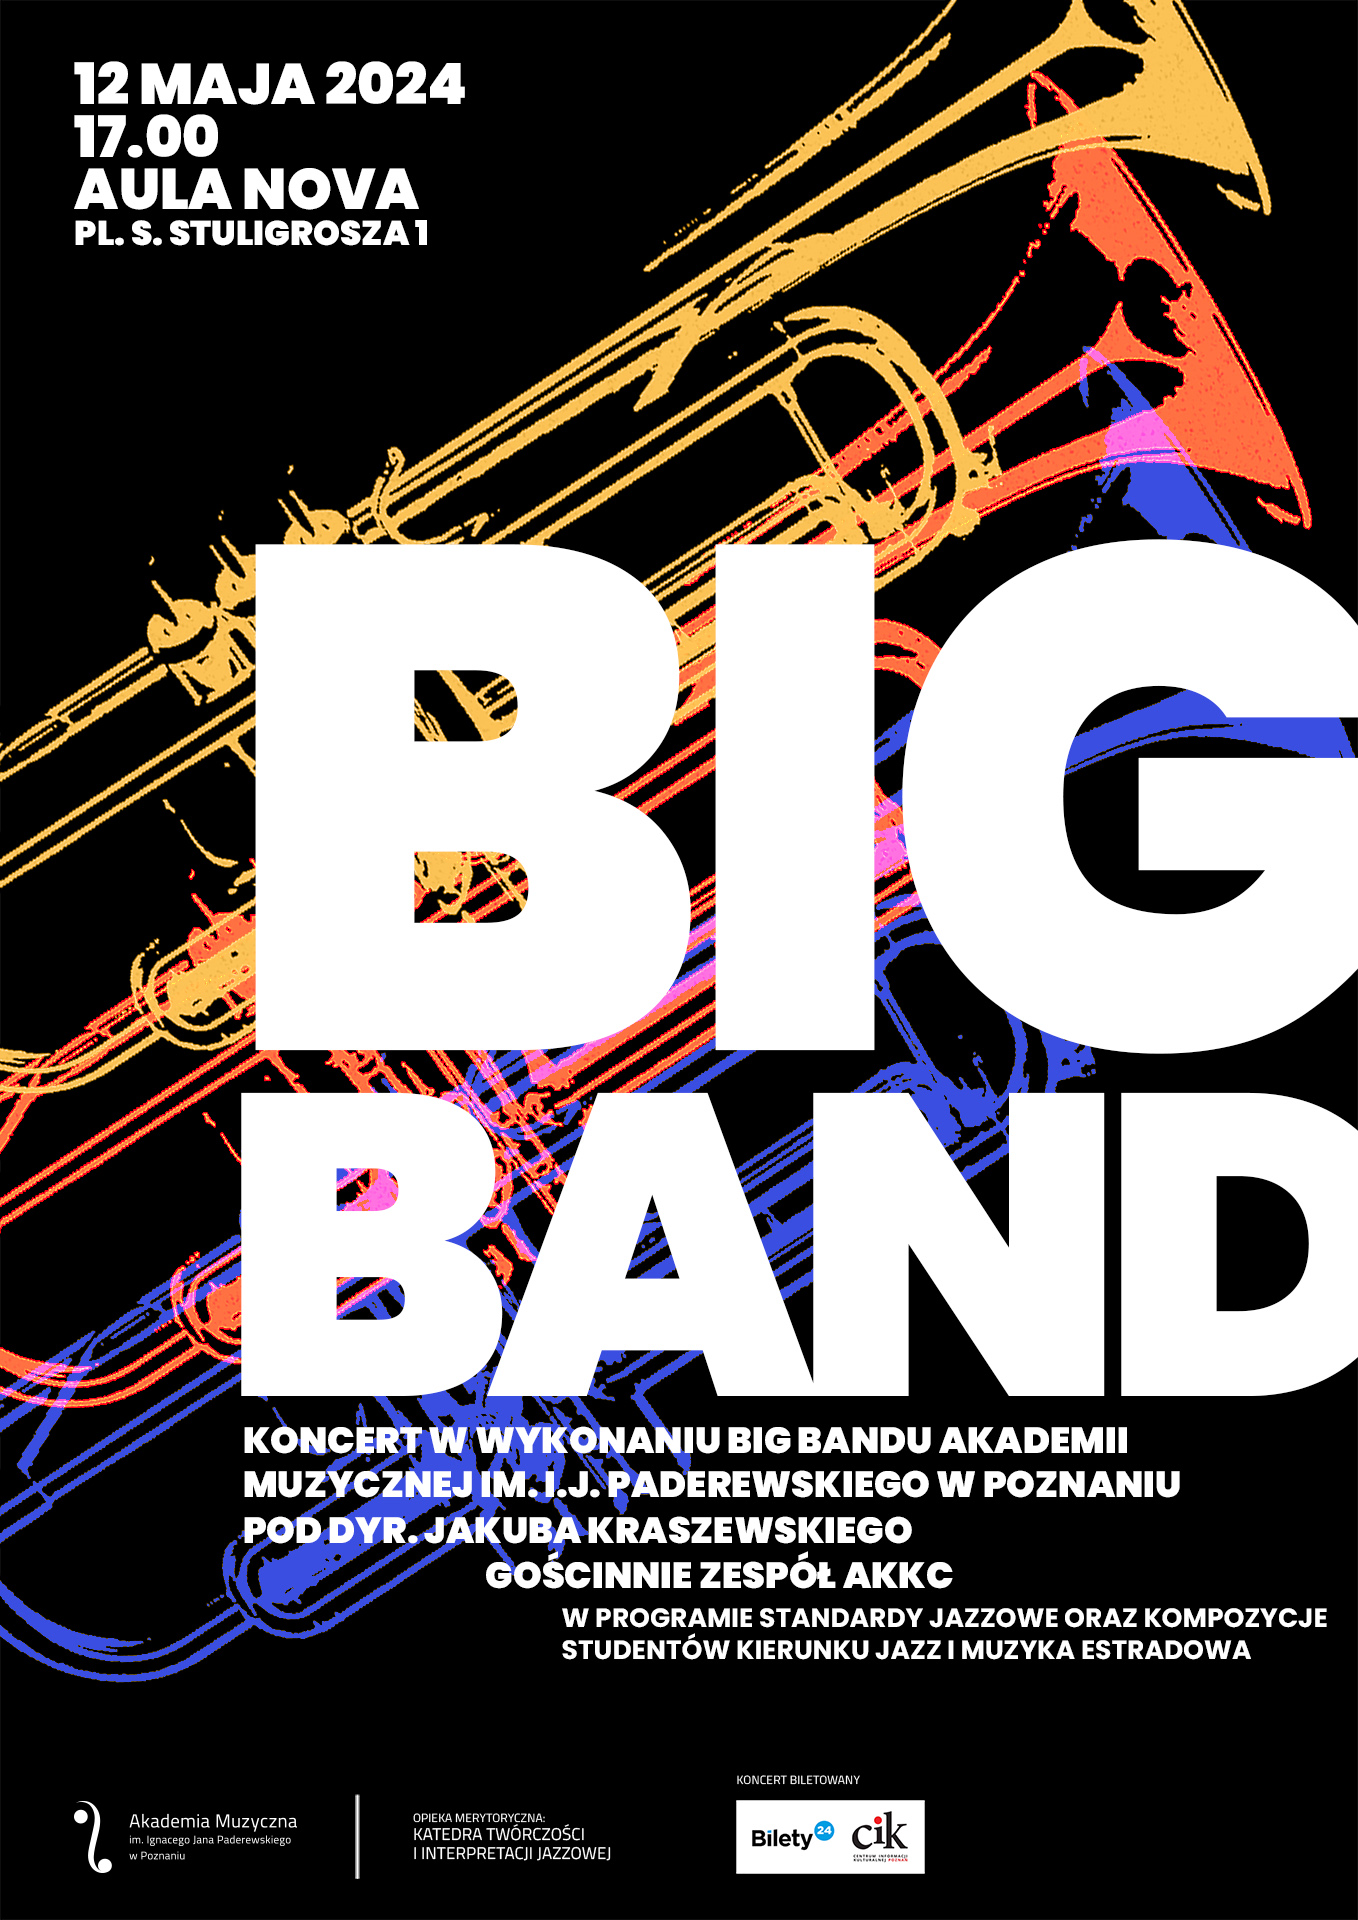 Afisz zawiera informacje na temat koncertu Big Bandu w dniu 12 maja 2024